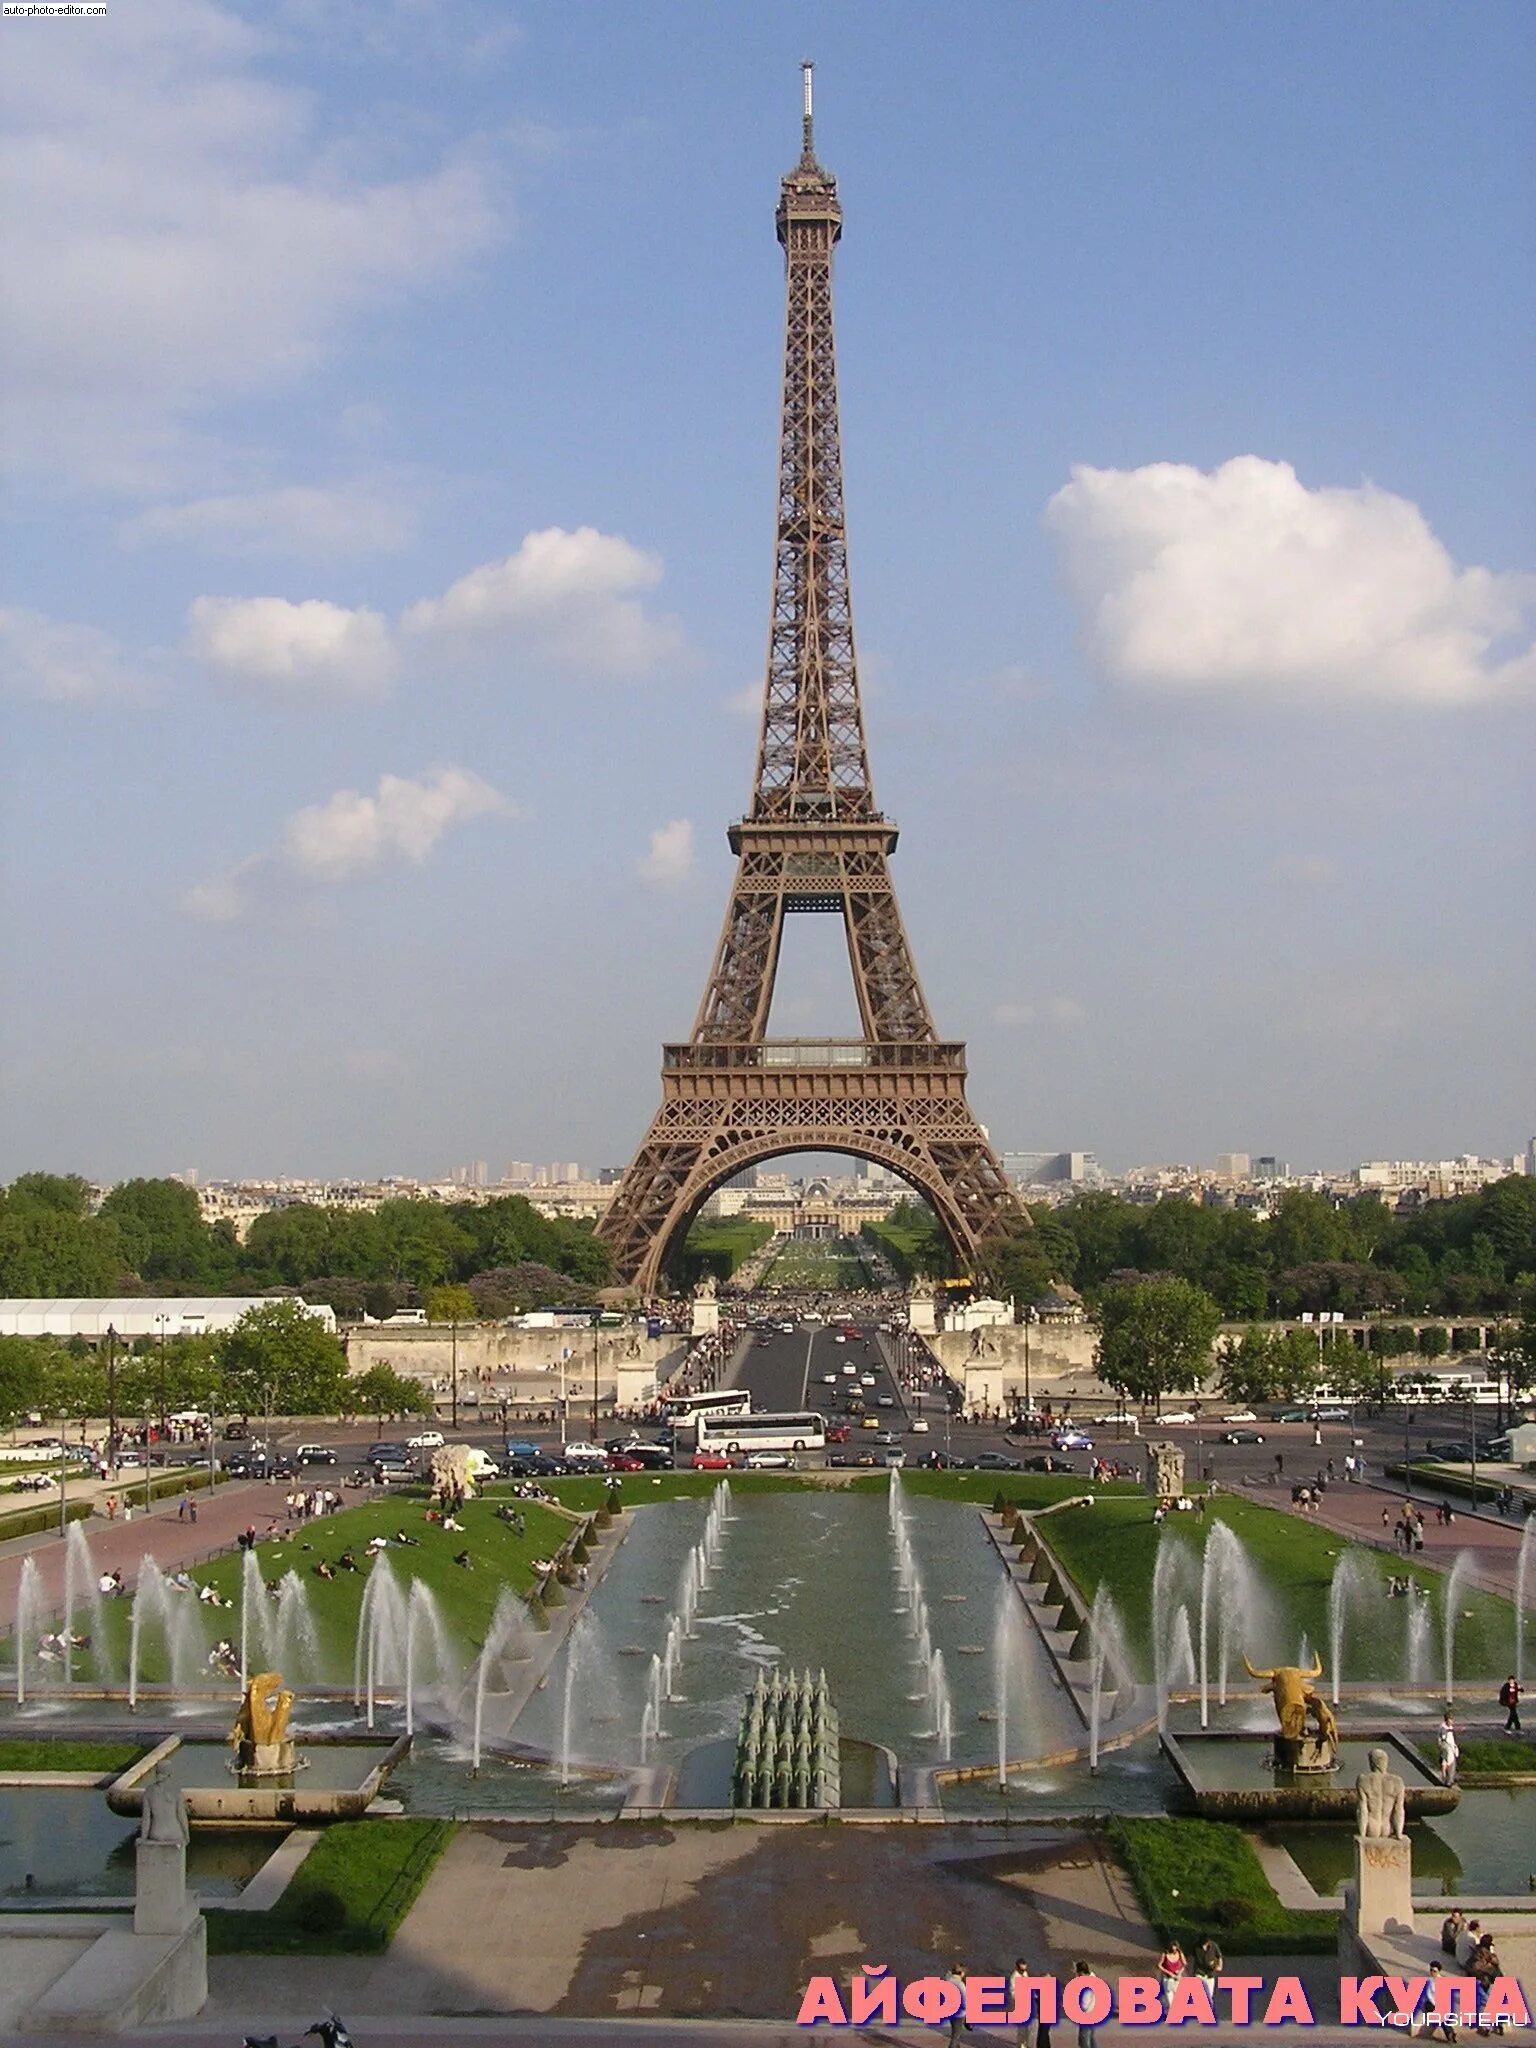 Достопримечательности каждых стран. Париж достромичательности. Эйфелева башня в Париже фото. Лувр и Эйфелева башня. Достопримечательности Франции Эйфелева башня.